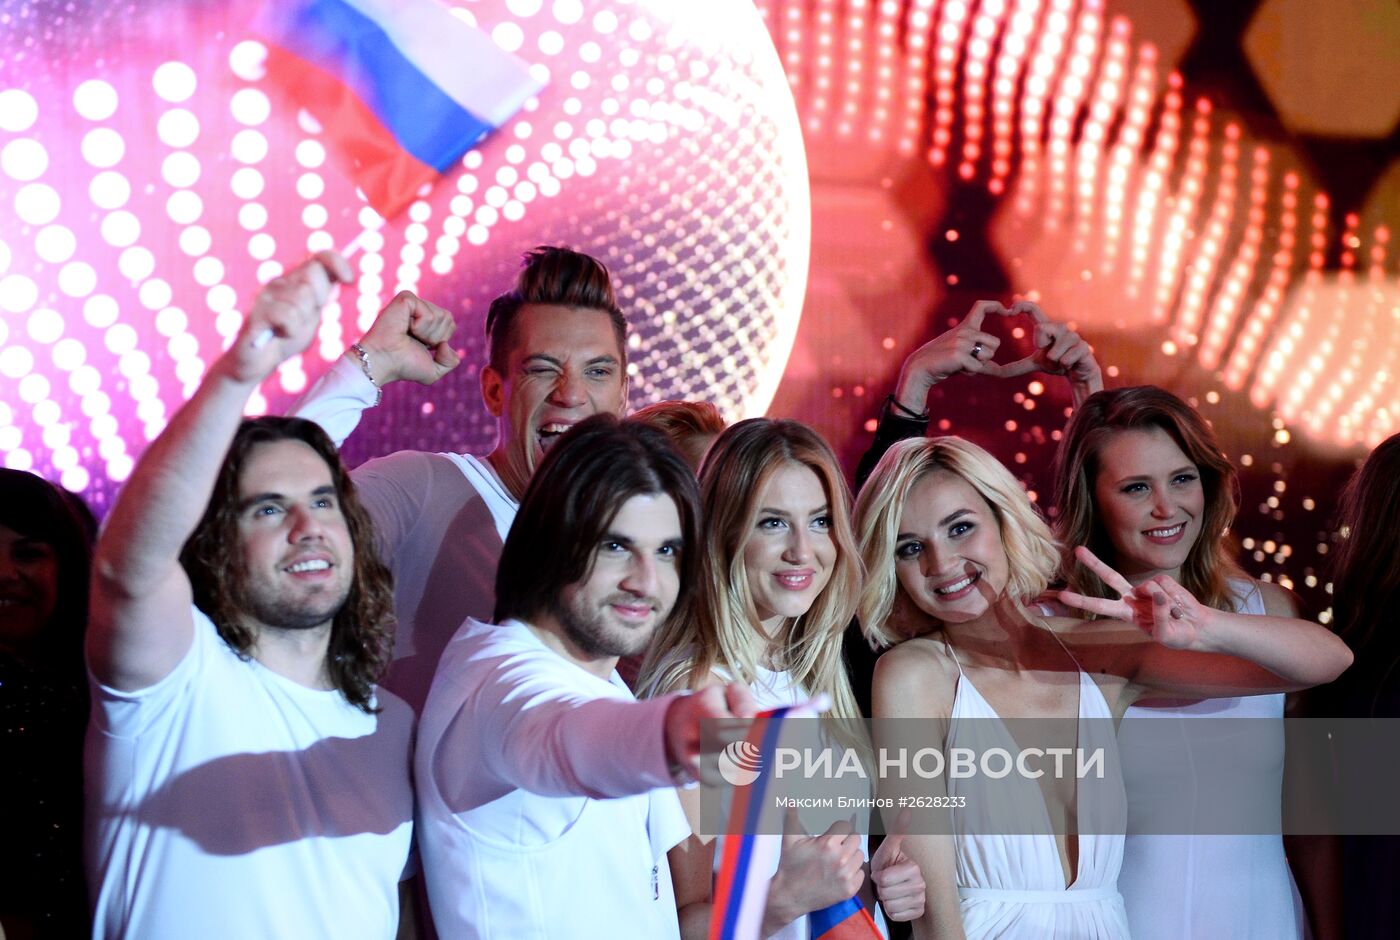 Первый полуфинал Международного конкурса песни "Евровидение 2015" в Вене